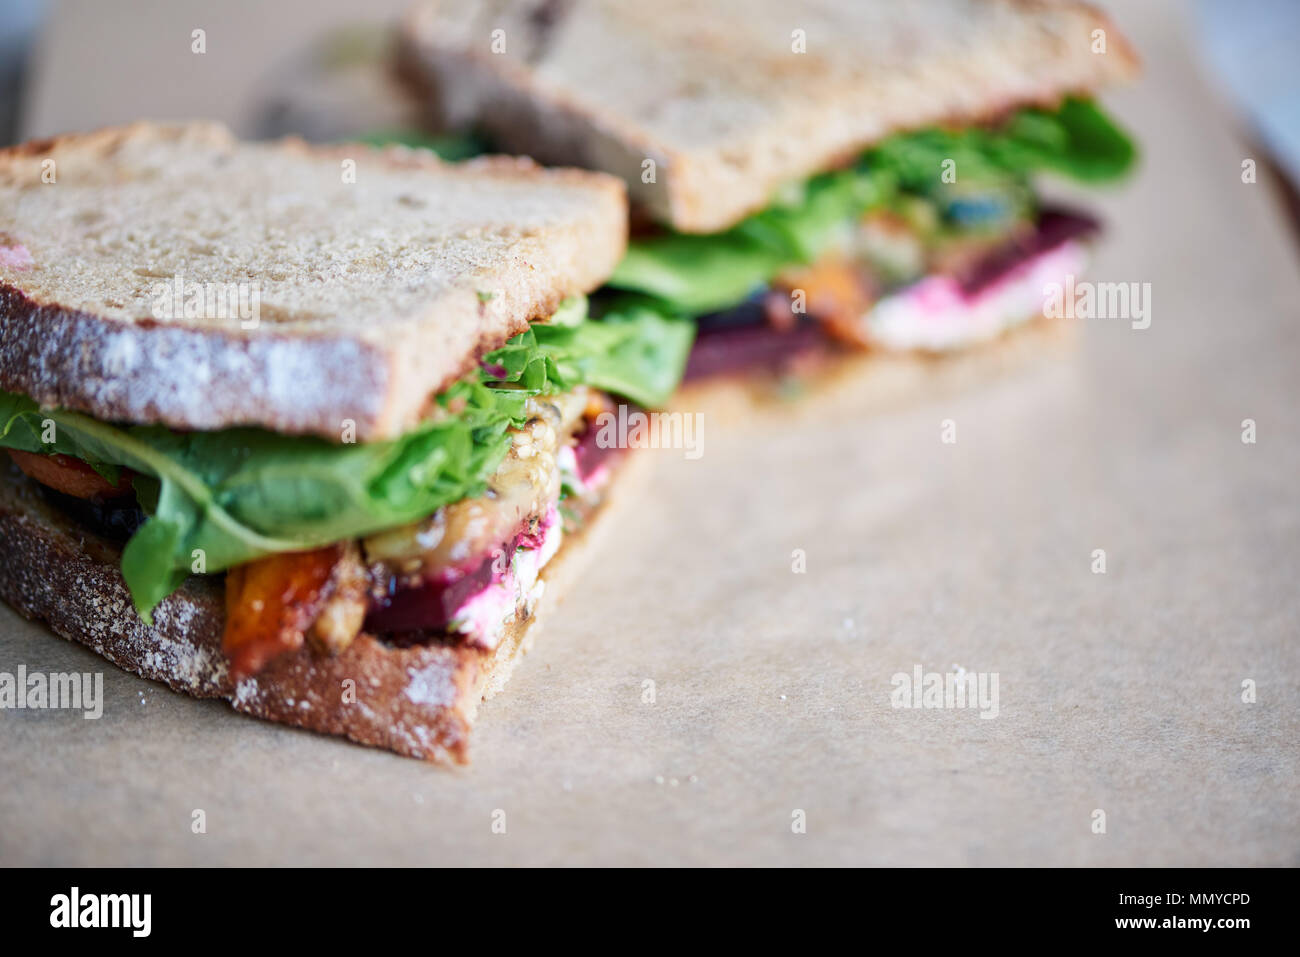 Gourment delicioso sándwich de vegetales mezclados en un servicio de directorio Foto de stock